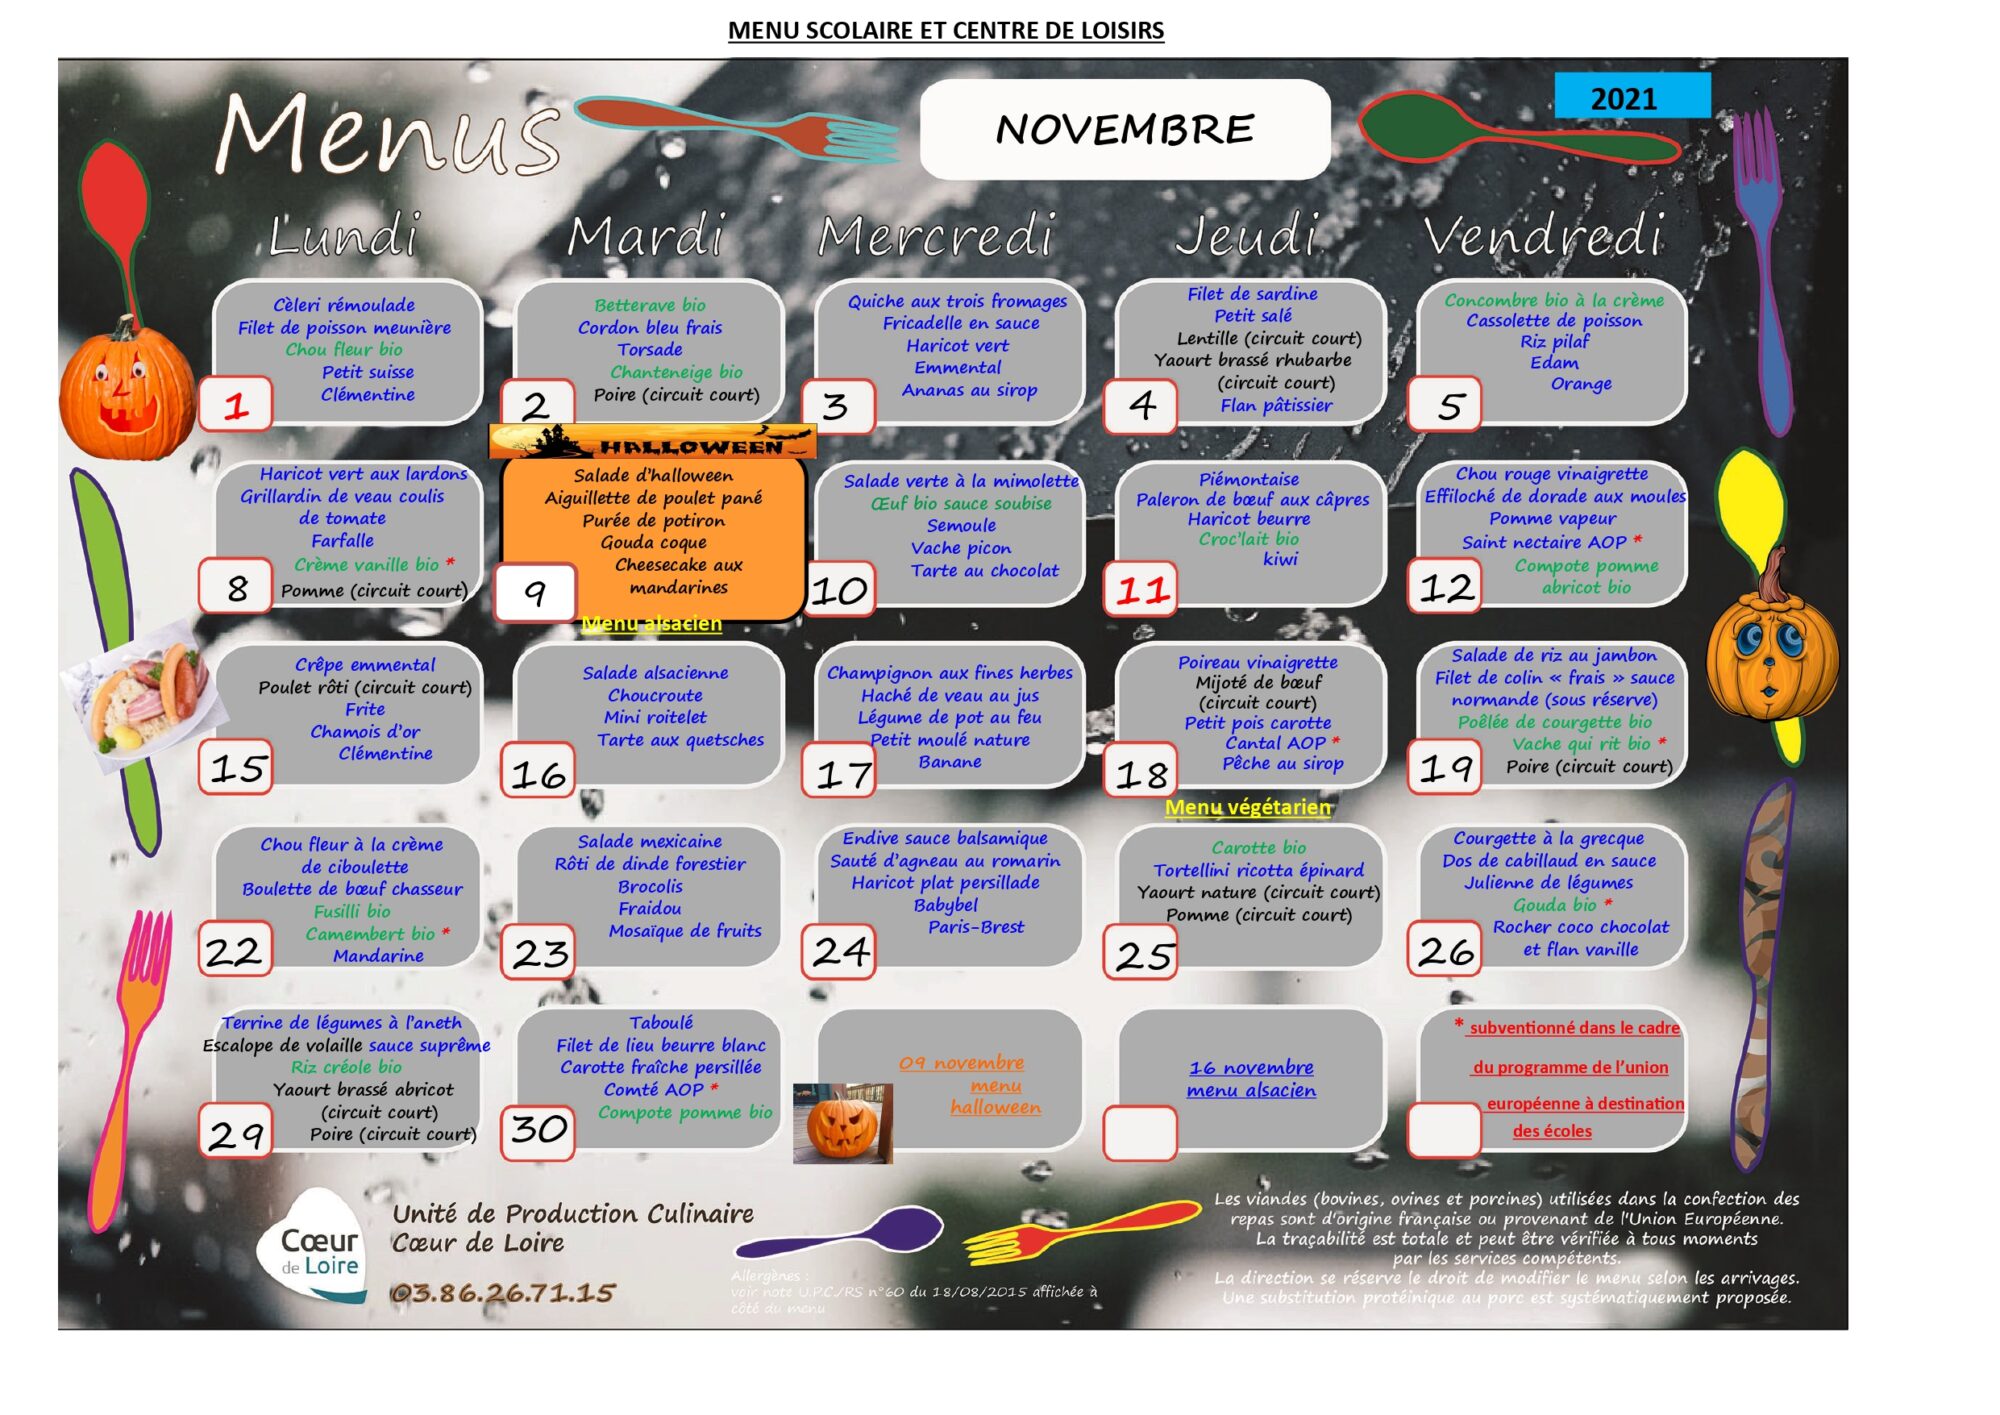 menu Novembre 2021 SCOLAIRE ET CENTRE DE LOISIRS_page-0001